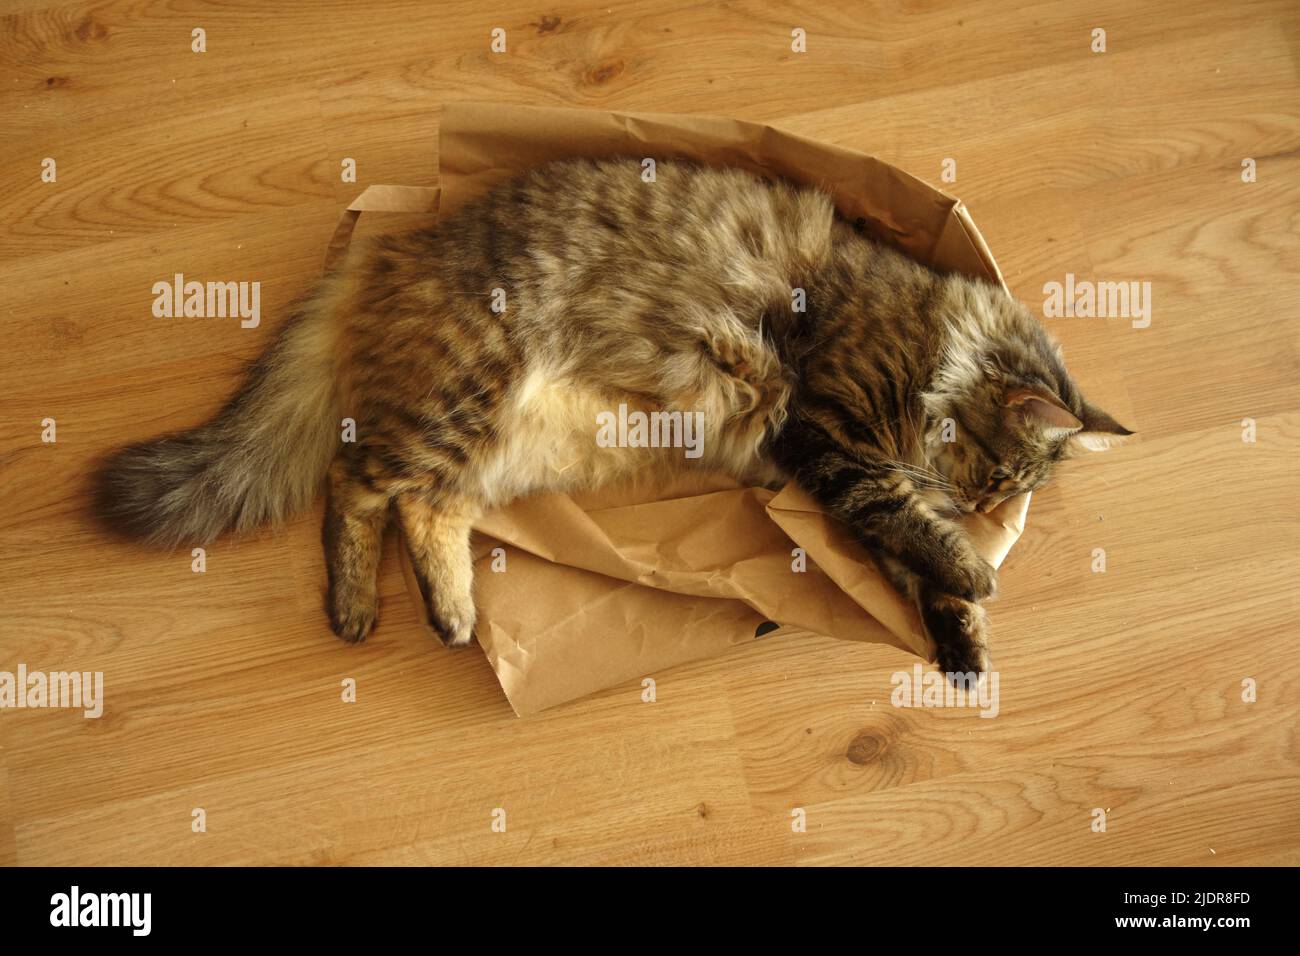 gato doméstico acostado en una bolsa de papel Foto de stock